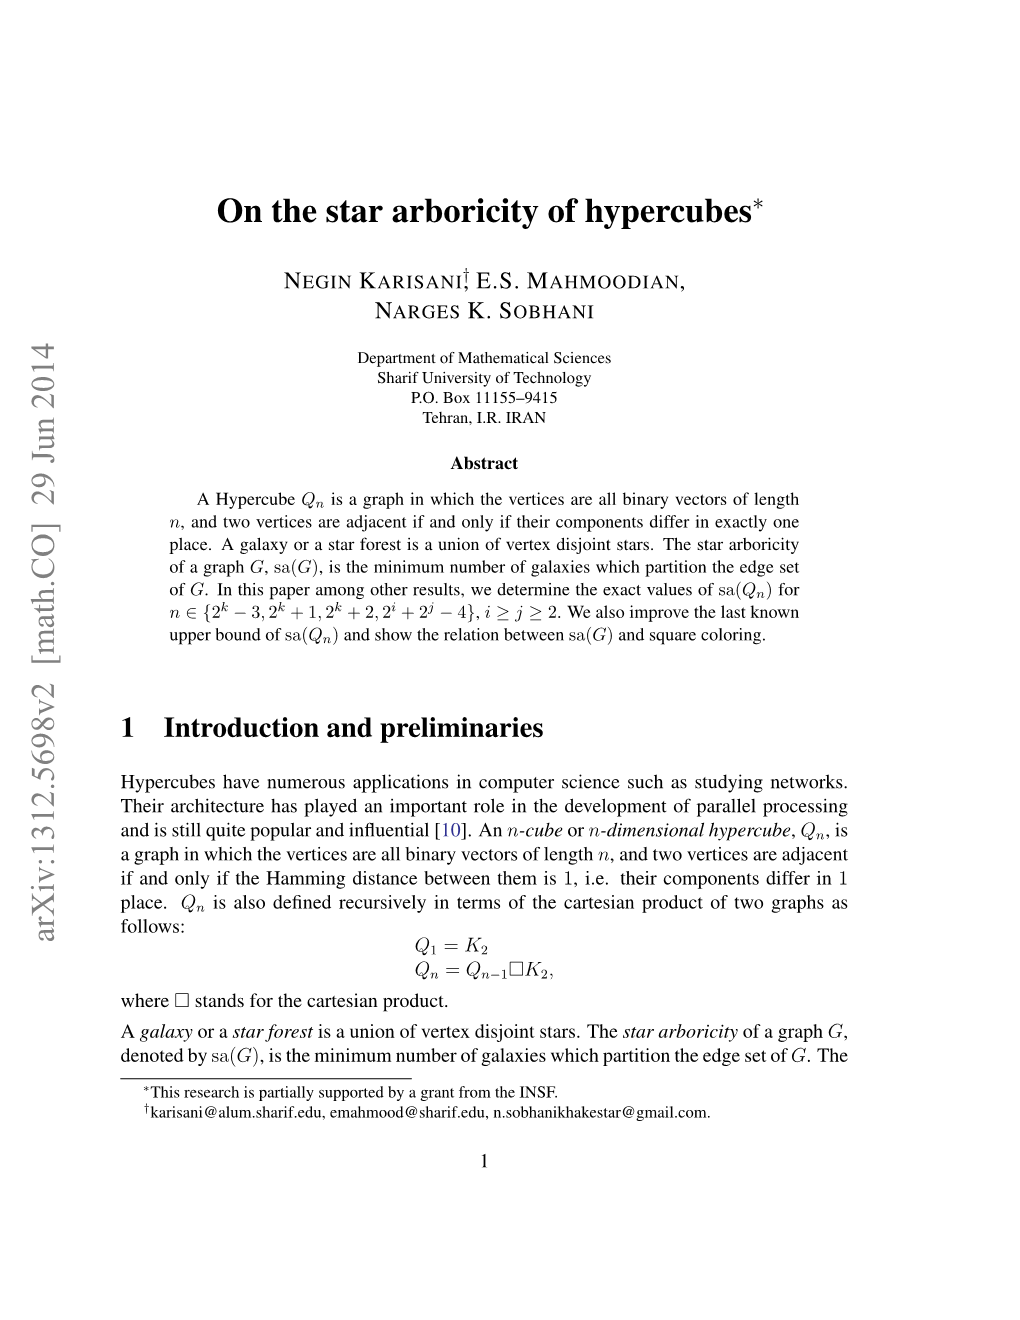 On the Star Arboricity of Hypercubes Arxiv:1312.5698V2 [Math.CO] 29